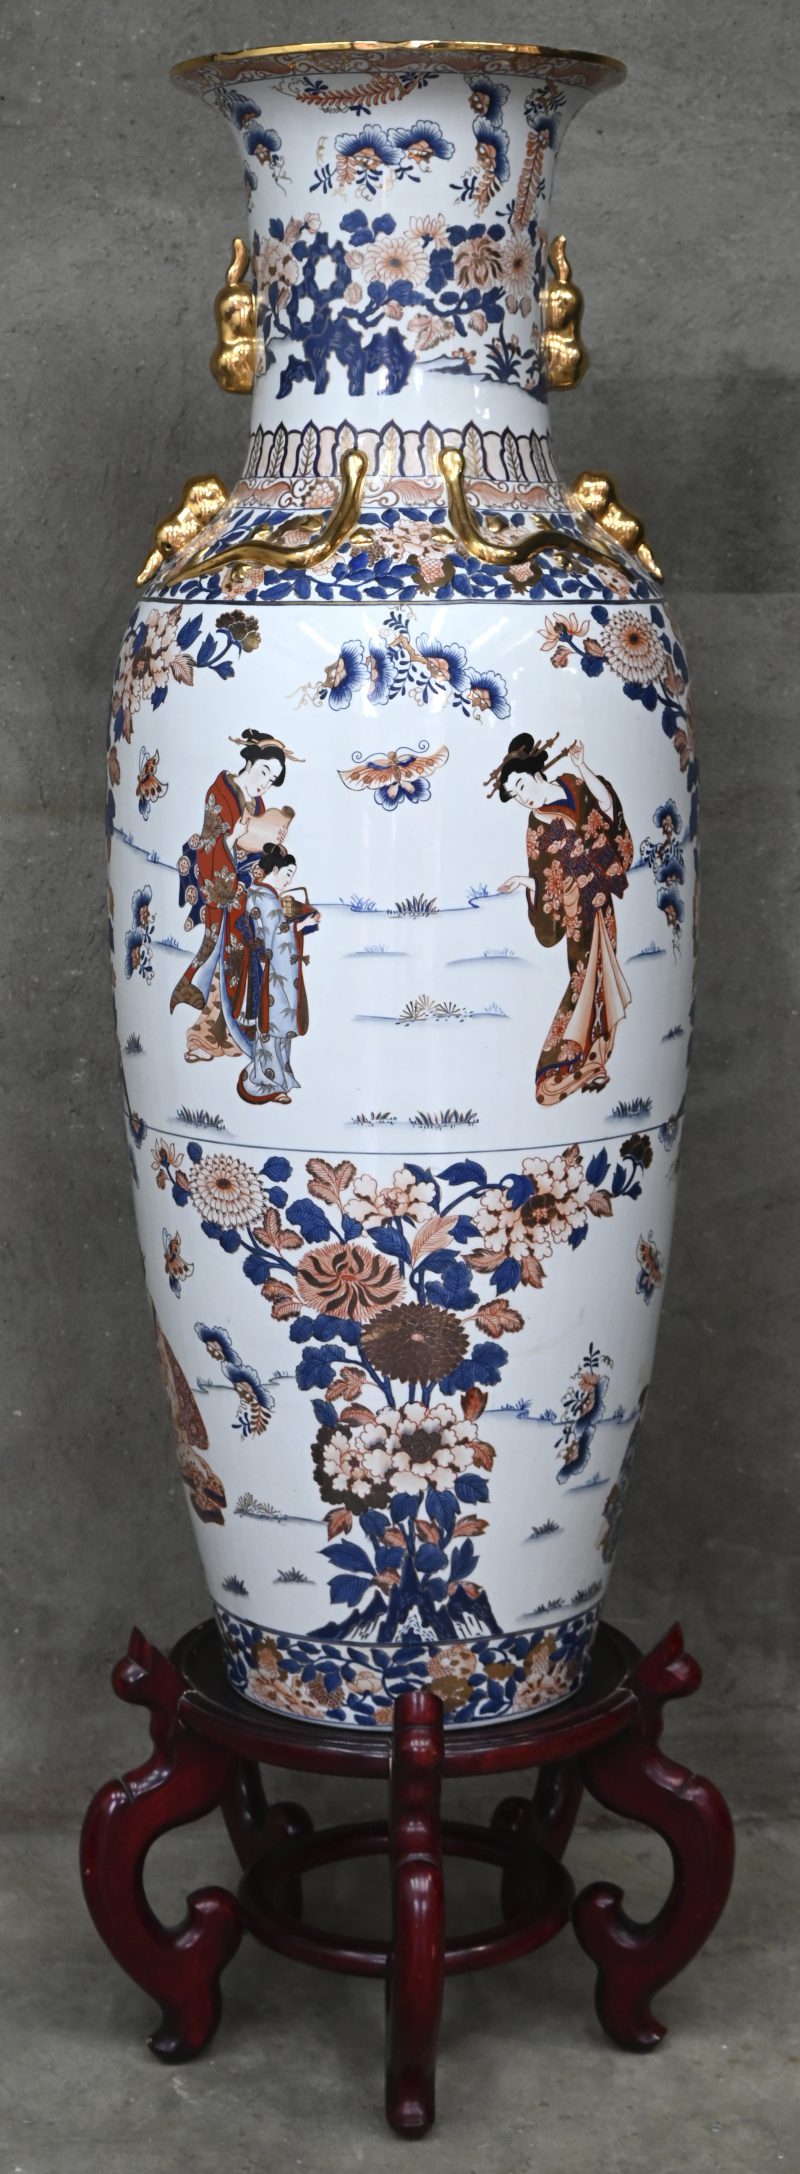 Een zeer grote Chinese vaas op sokkel beschilderd met bloemen en figuren.